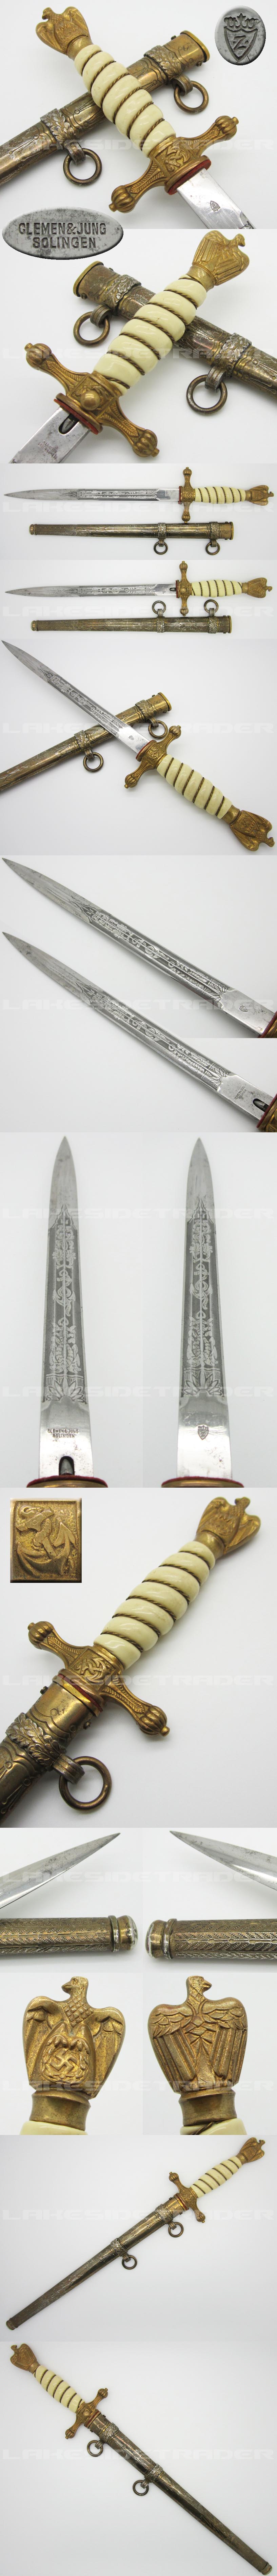 2nd Model Navy Dagger by Clemen & Jung